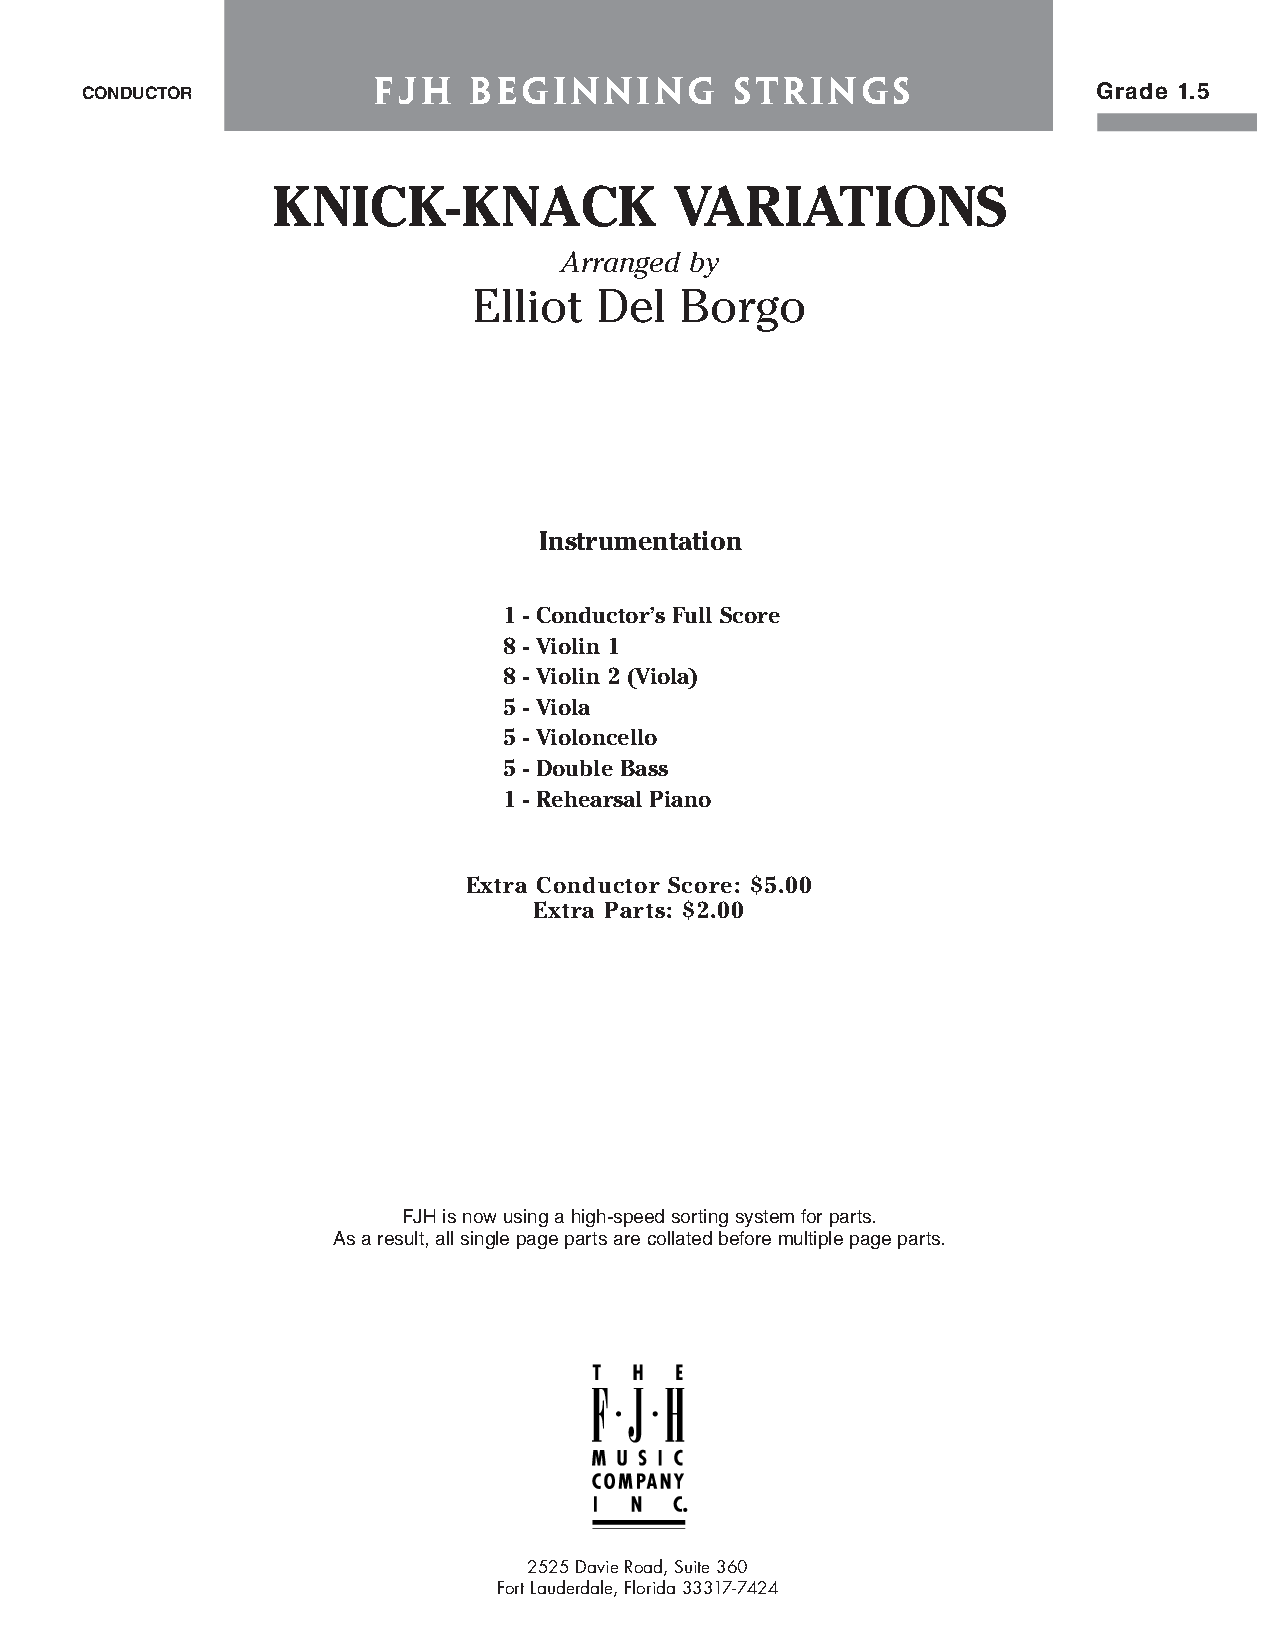 KNICK KNACK VARIATIONS